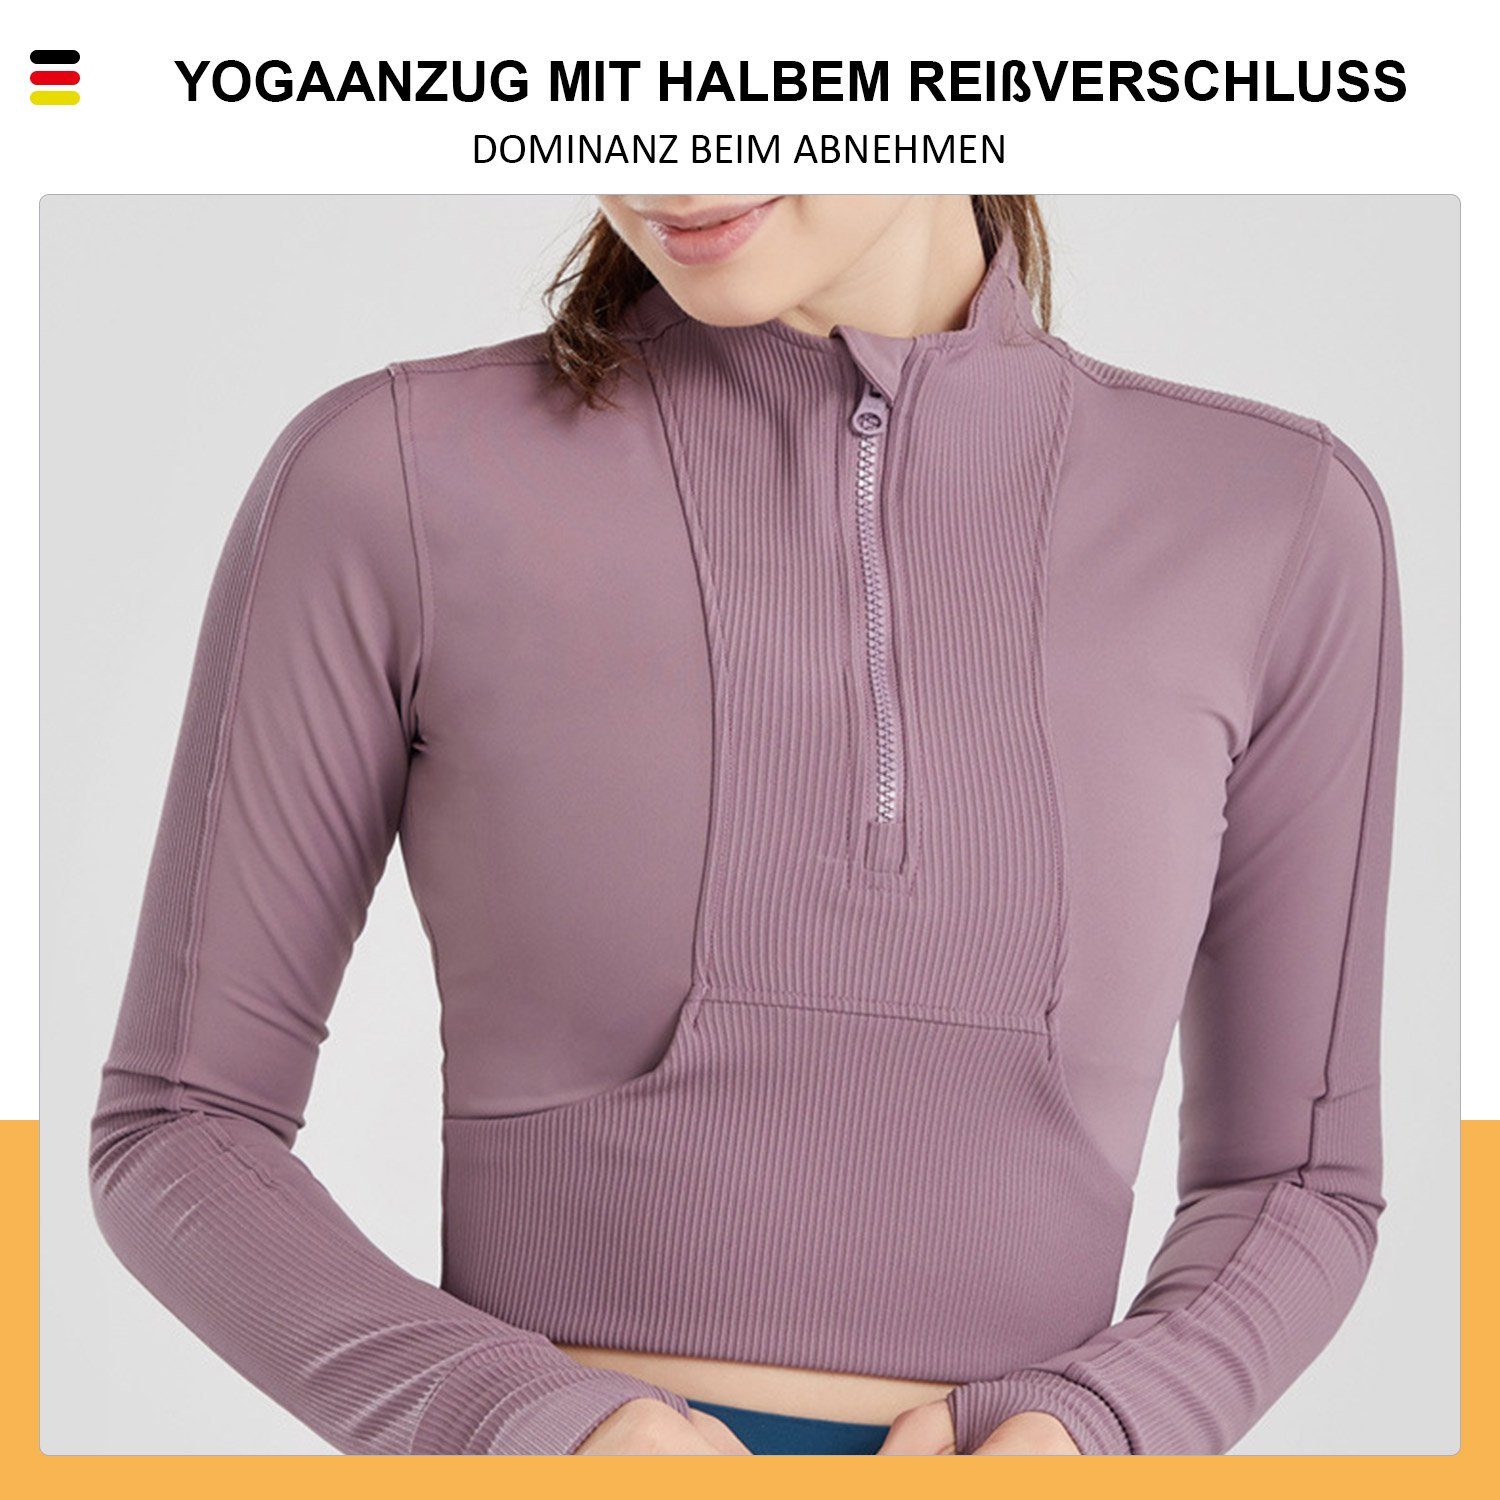 MAGICSHE Reißverschluss Halber Leicht Fitness Sweatshirt Damen Funktionsshirt T-Shirt Design Top Lila Brust